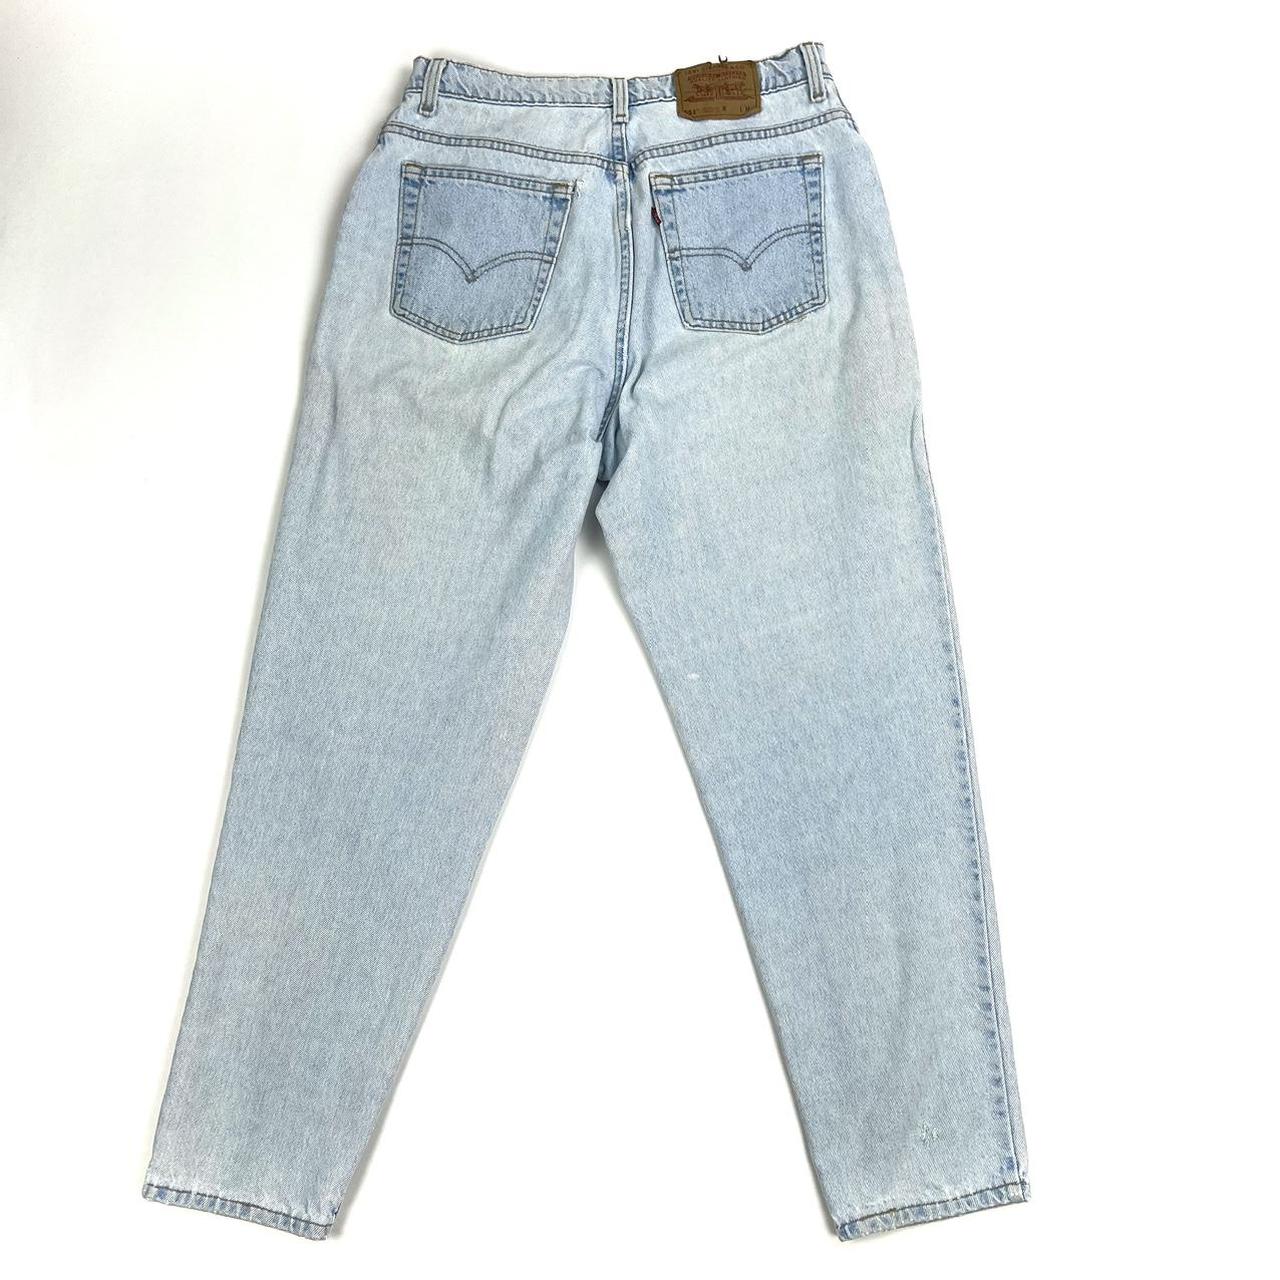 Vintage 1990s Levi's 551 jeans, Size 16